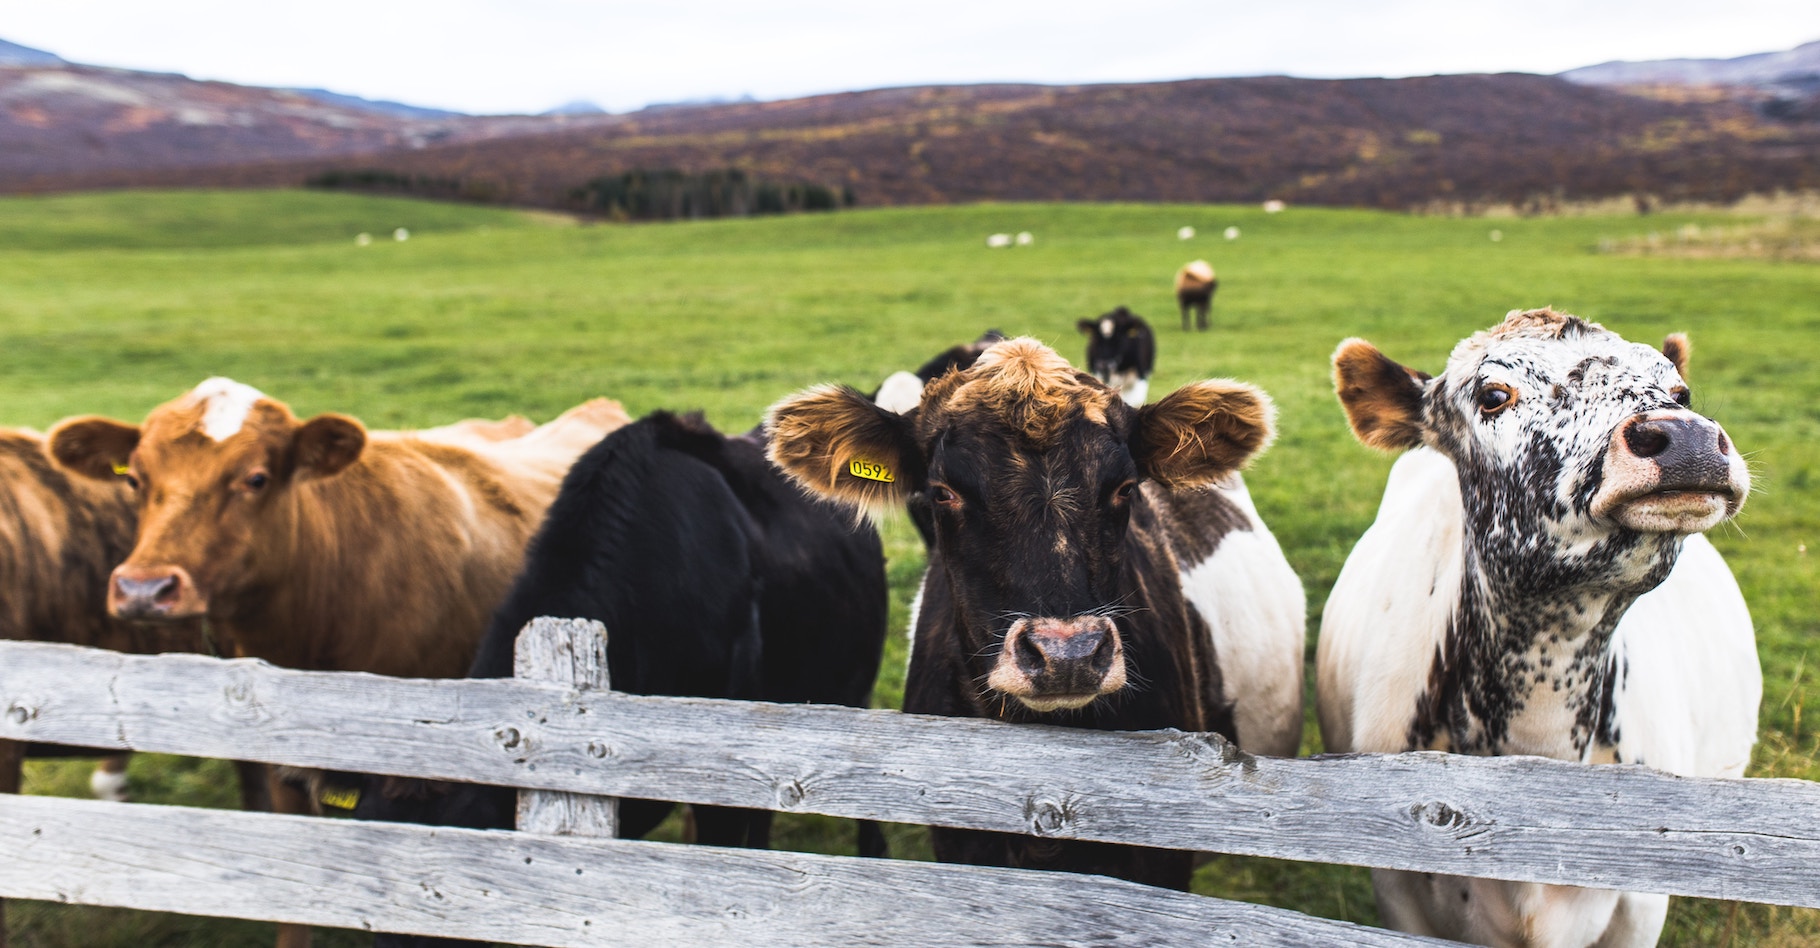 Le méthane — tel que celui émis par les rots et les pets de vaches — est réputé être un puissant gaz à effet de serre. Des scientifiques en apportent la preuve par des mesures atmosphériques. © Tim Wright, Unsplash